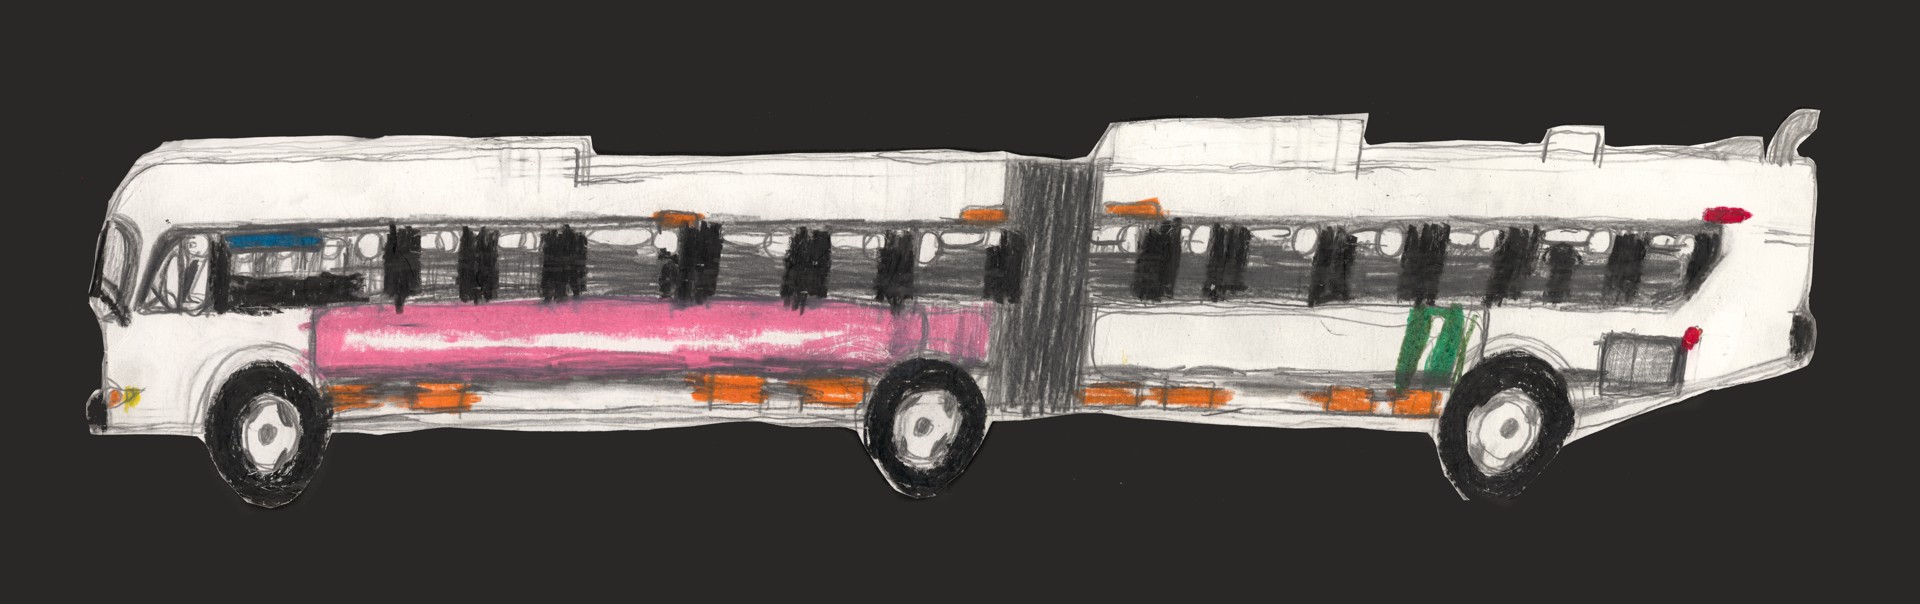 Pink Advertising Bus by Michael Haynes